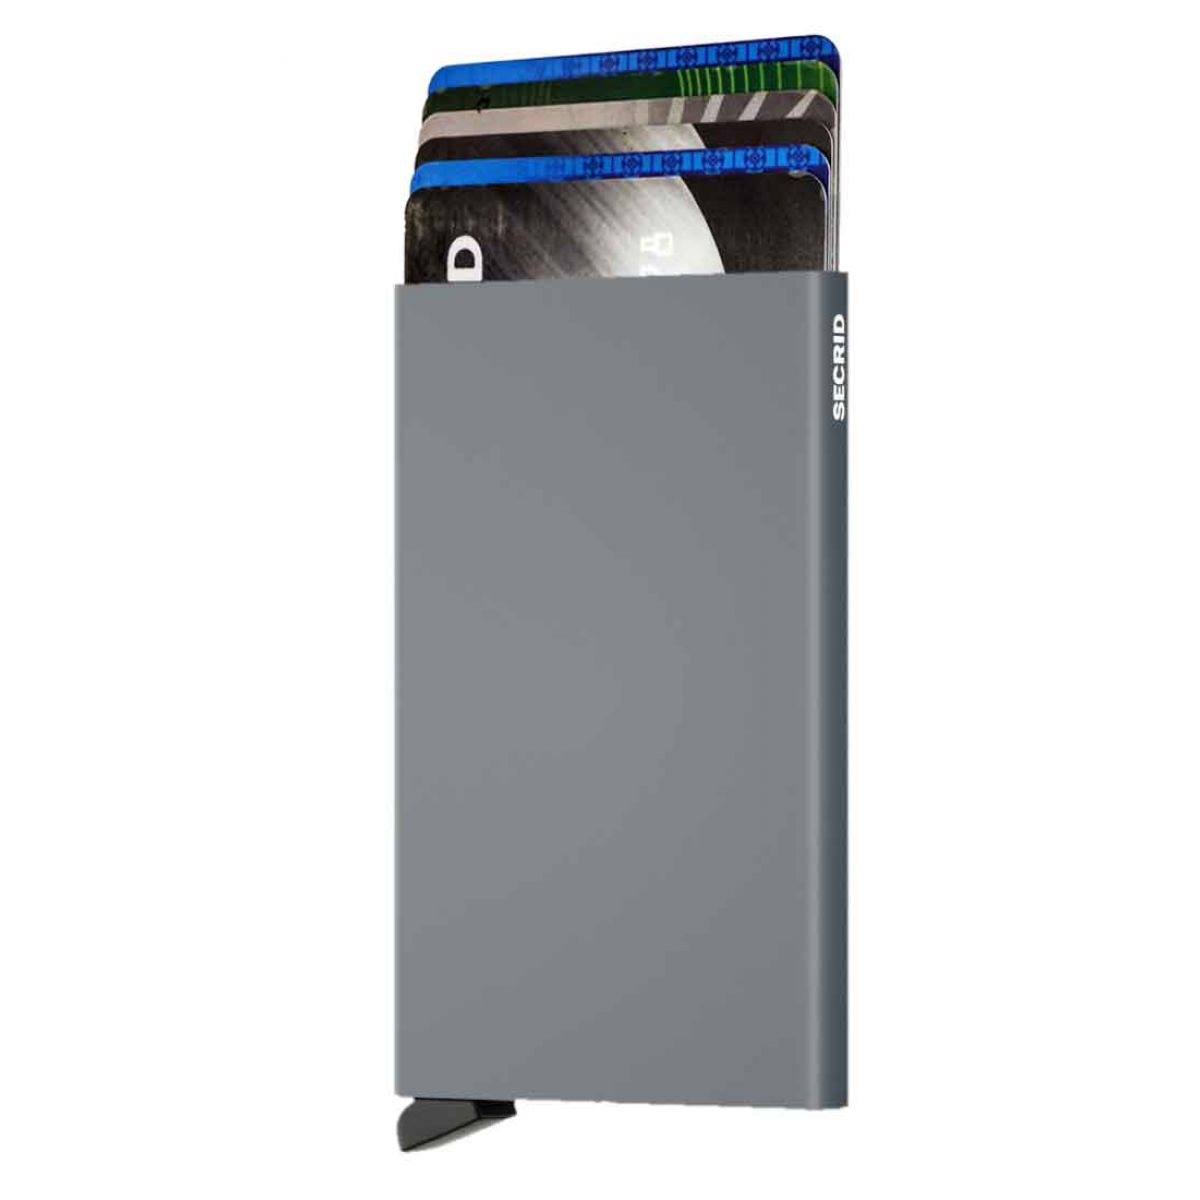 Secrid card protector aluminium in 